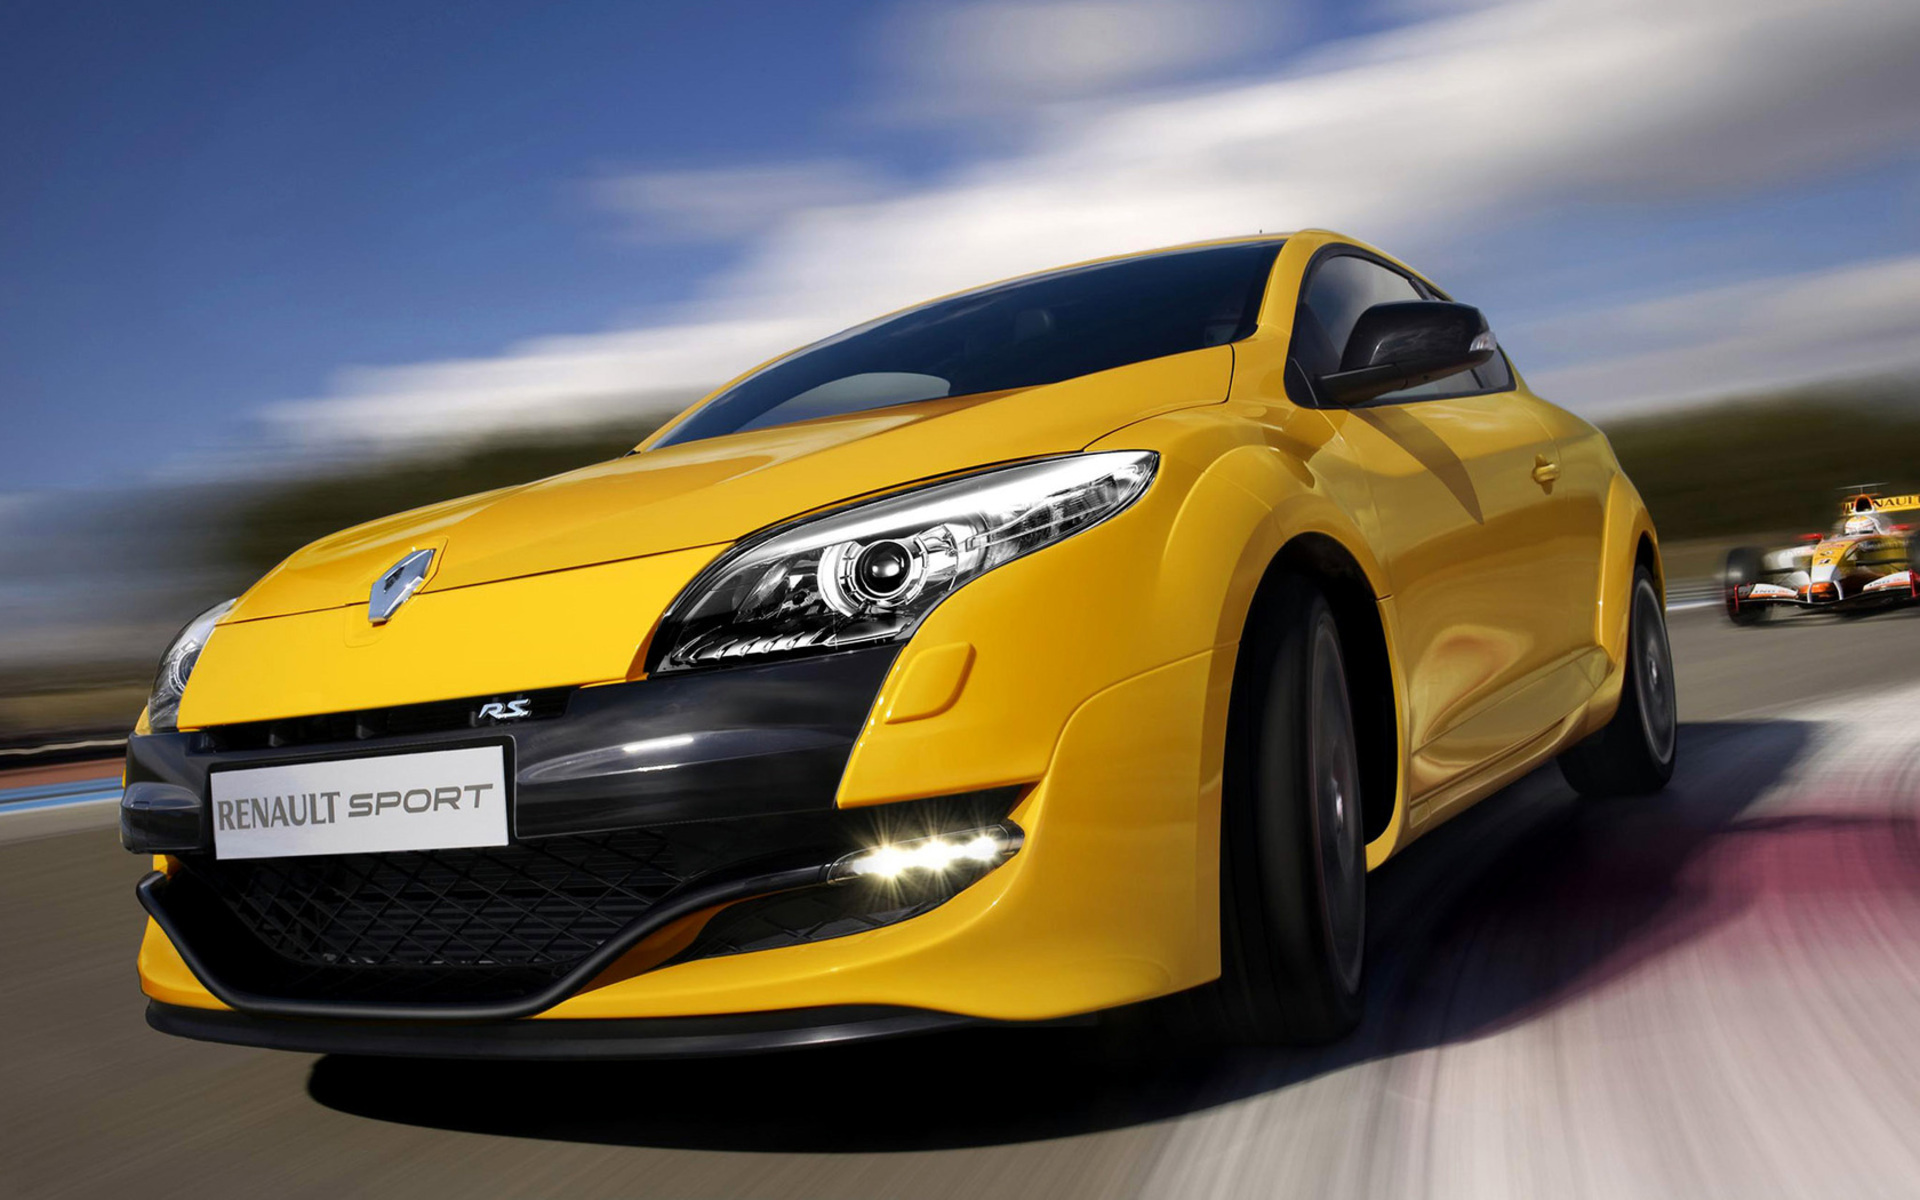 Renault Megane Sport , HD Wallpaper & Backgrounds